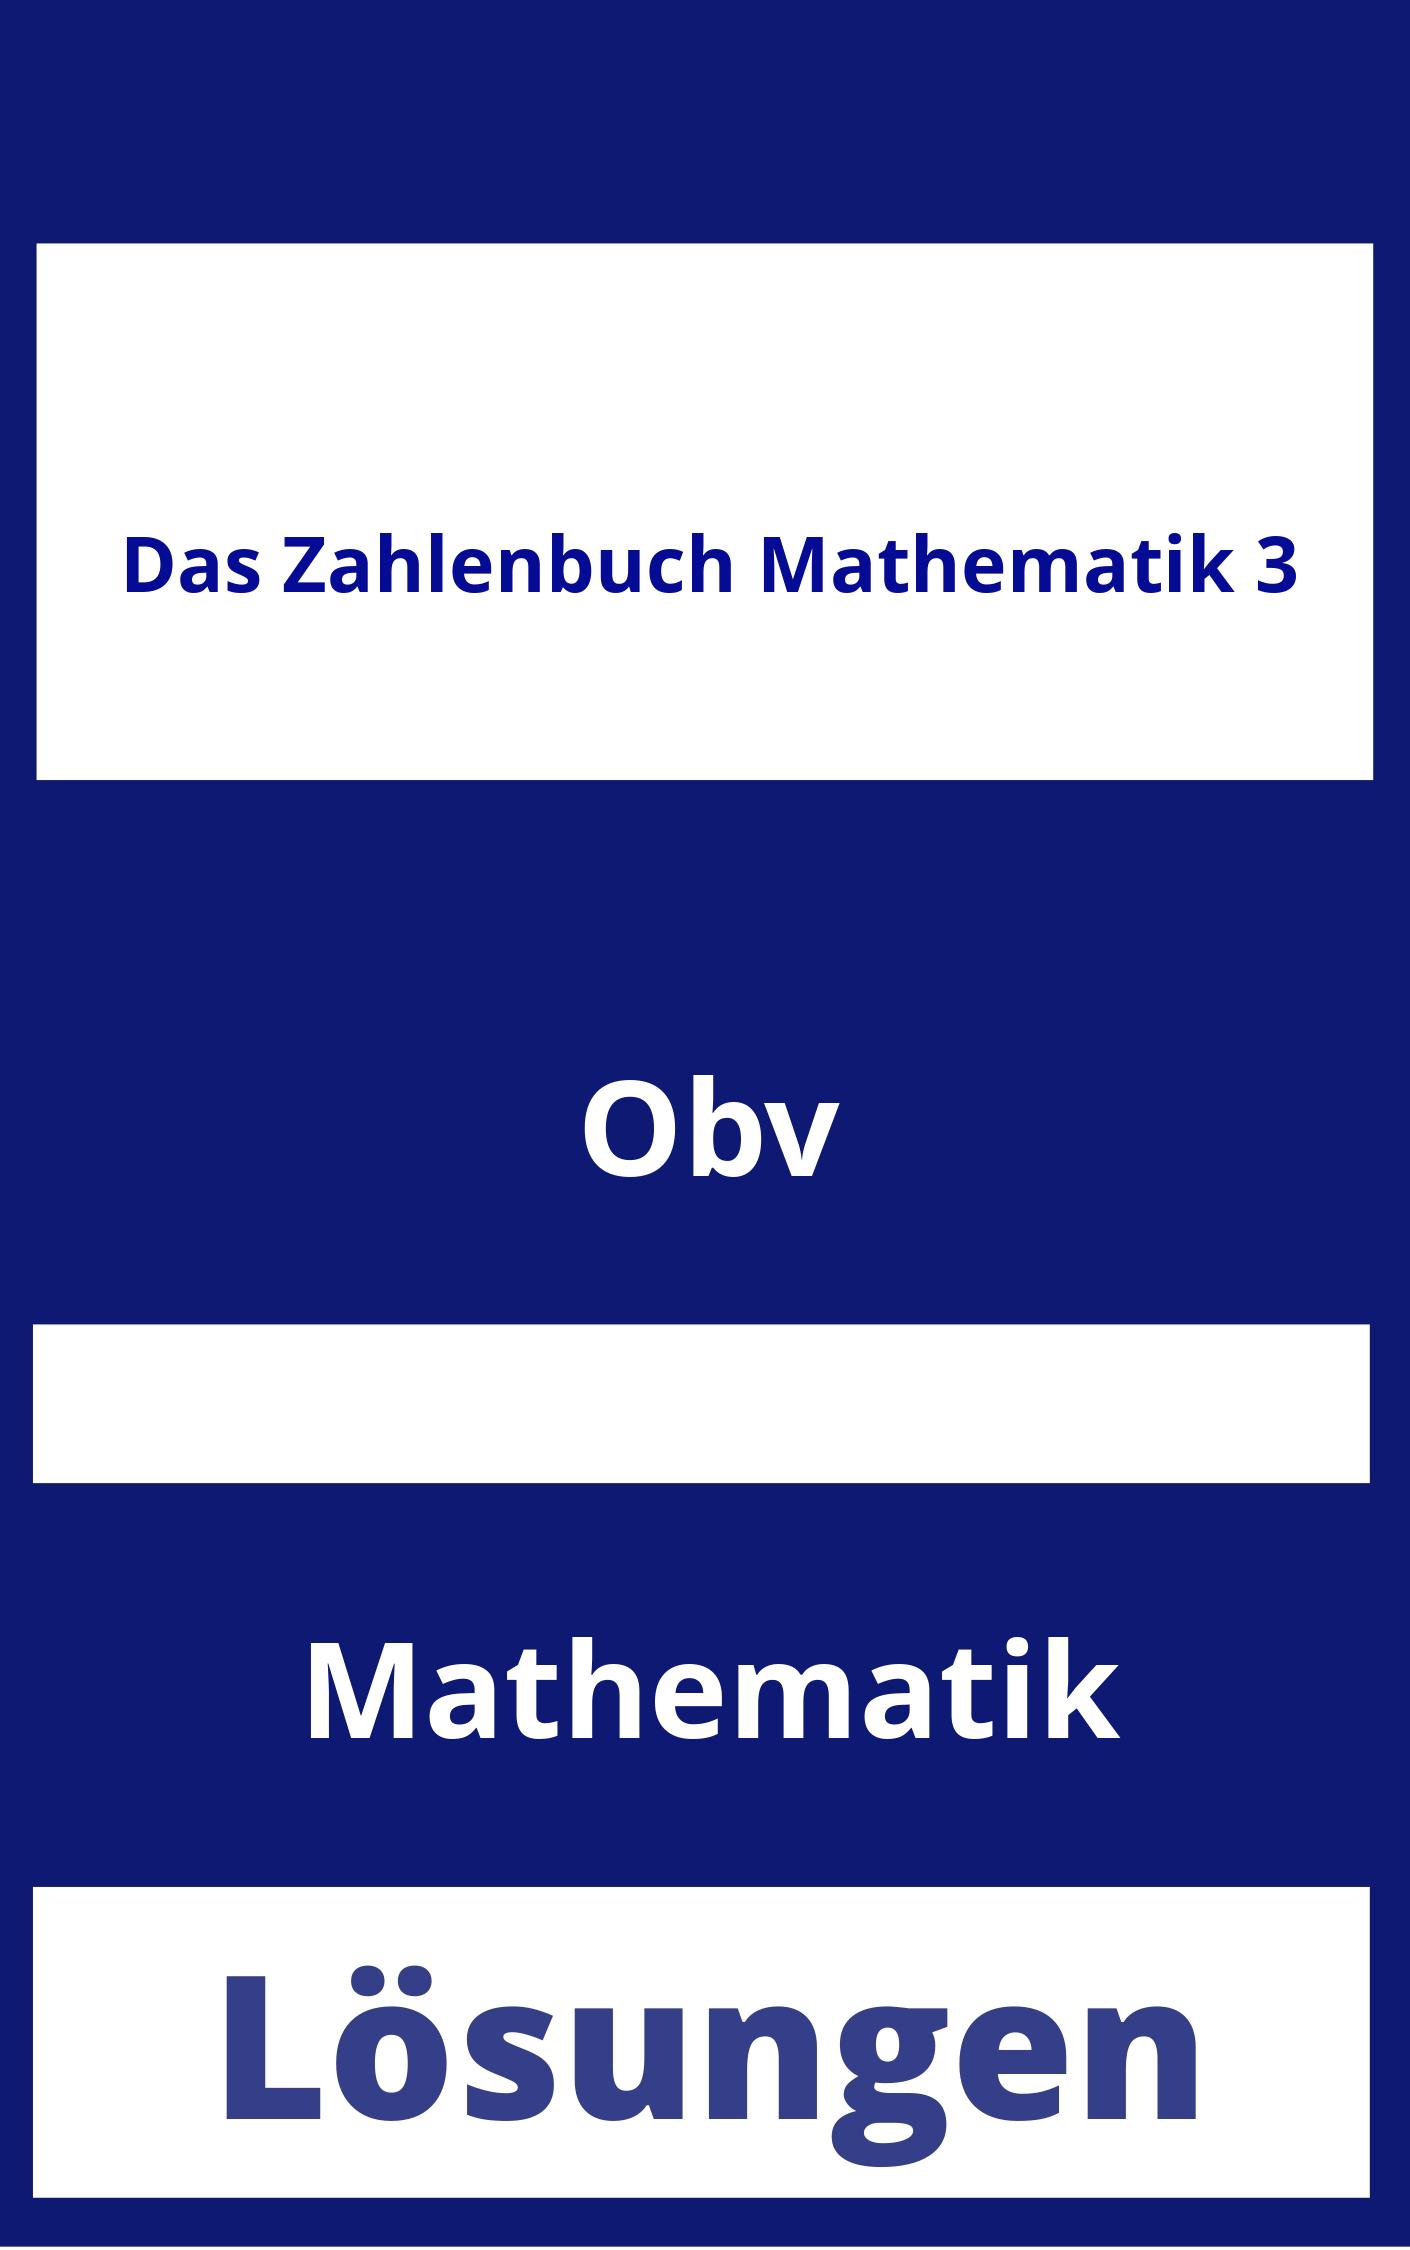 Das Zahlenbuch Mathematik 3 Lösungen PDF